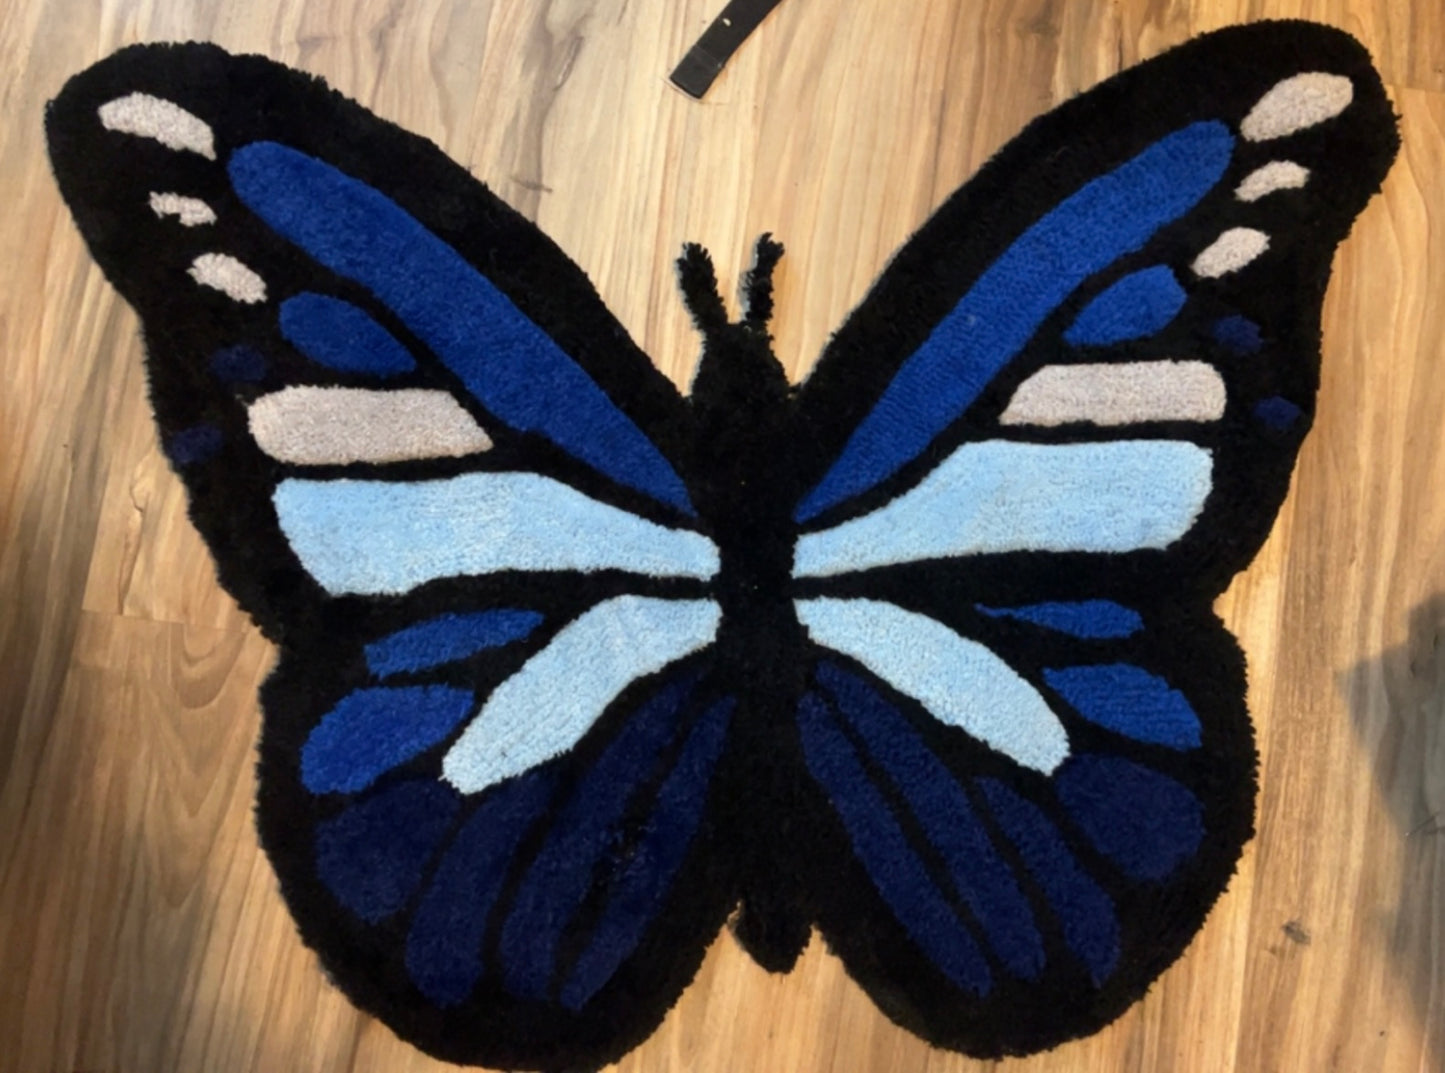 Butterfly rugs